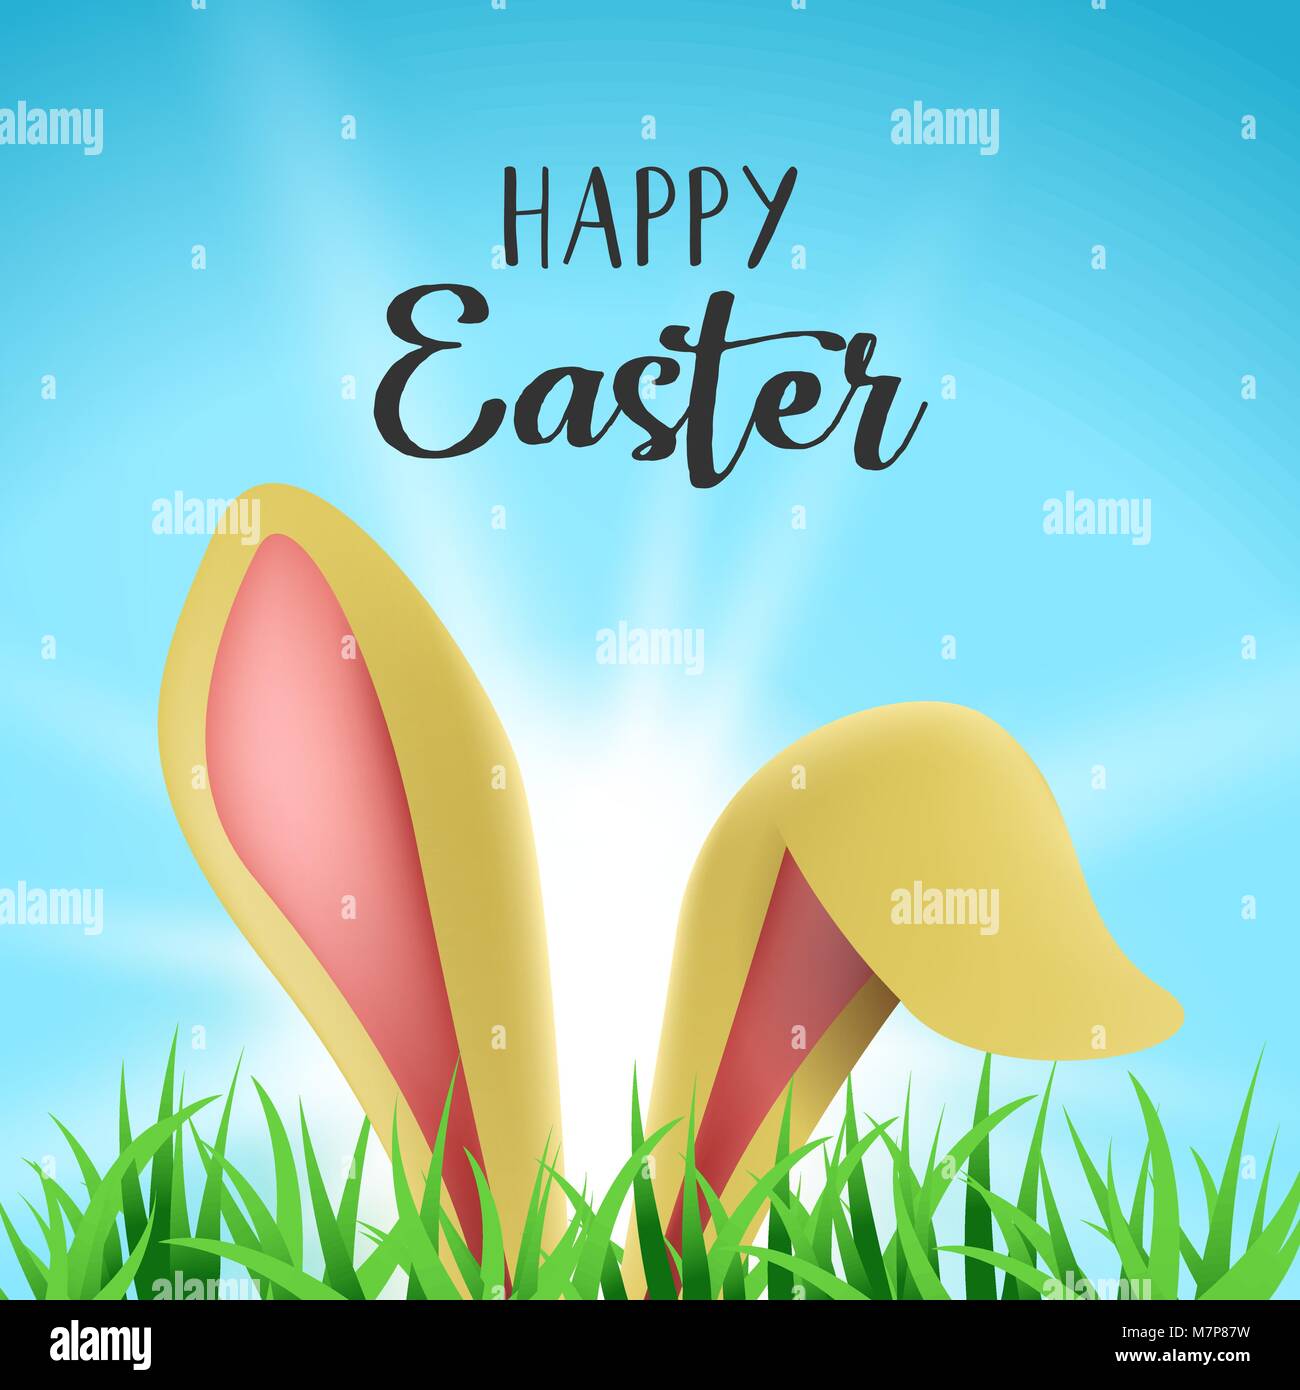 Lapin de Pâques holiday Greeting card illustration, oreilles de lapin se cacher derrière jardin herbe avec joie message. Vecteur EPS10. Illustration de Vecteur